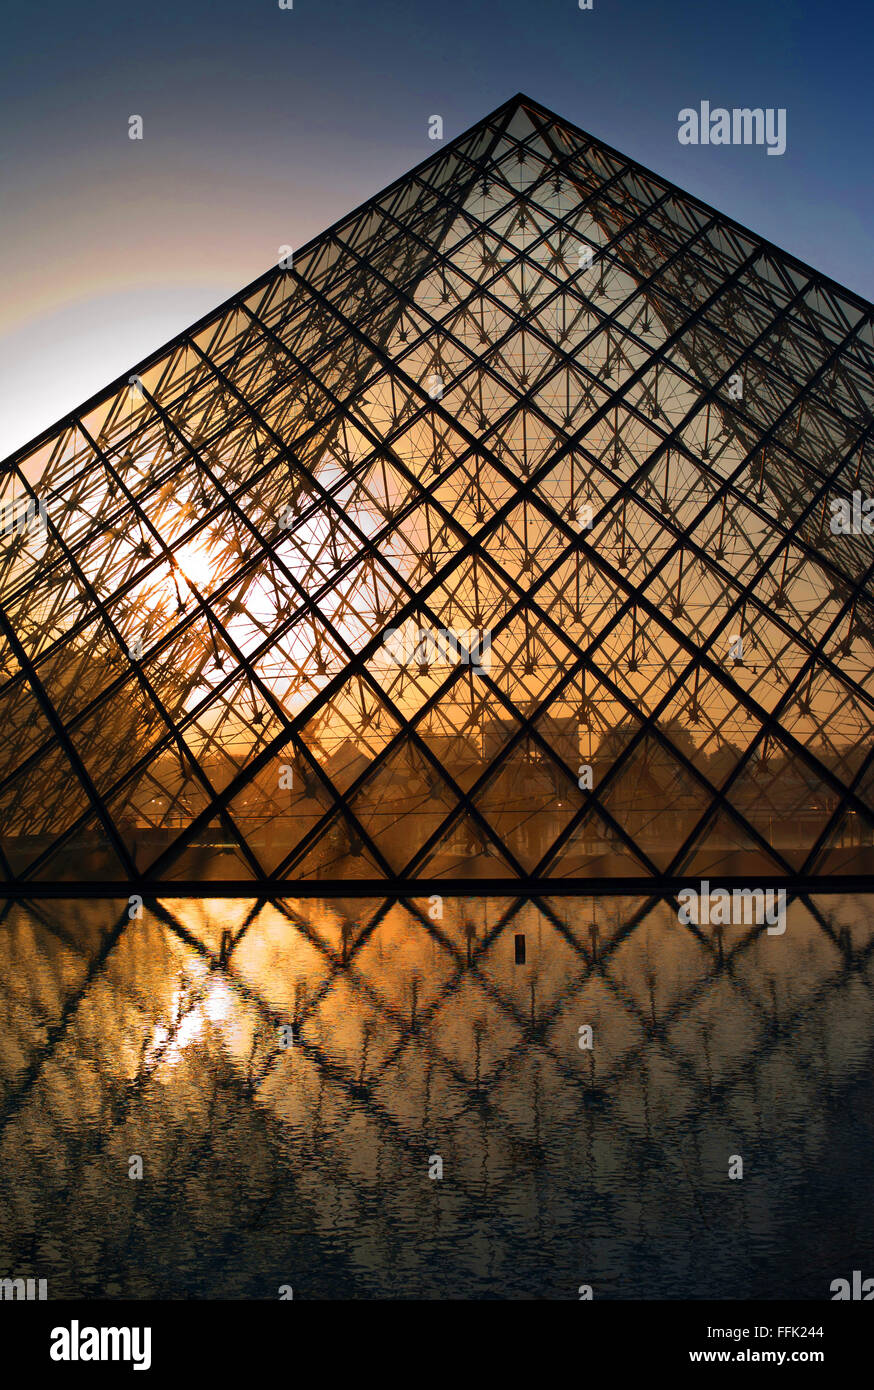 Musée du Louvre Pyramid, Paris Stock Photo